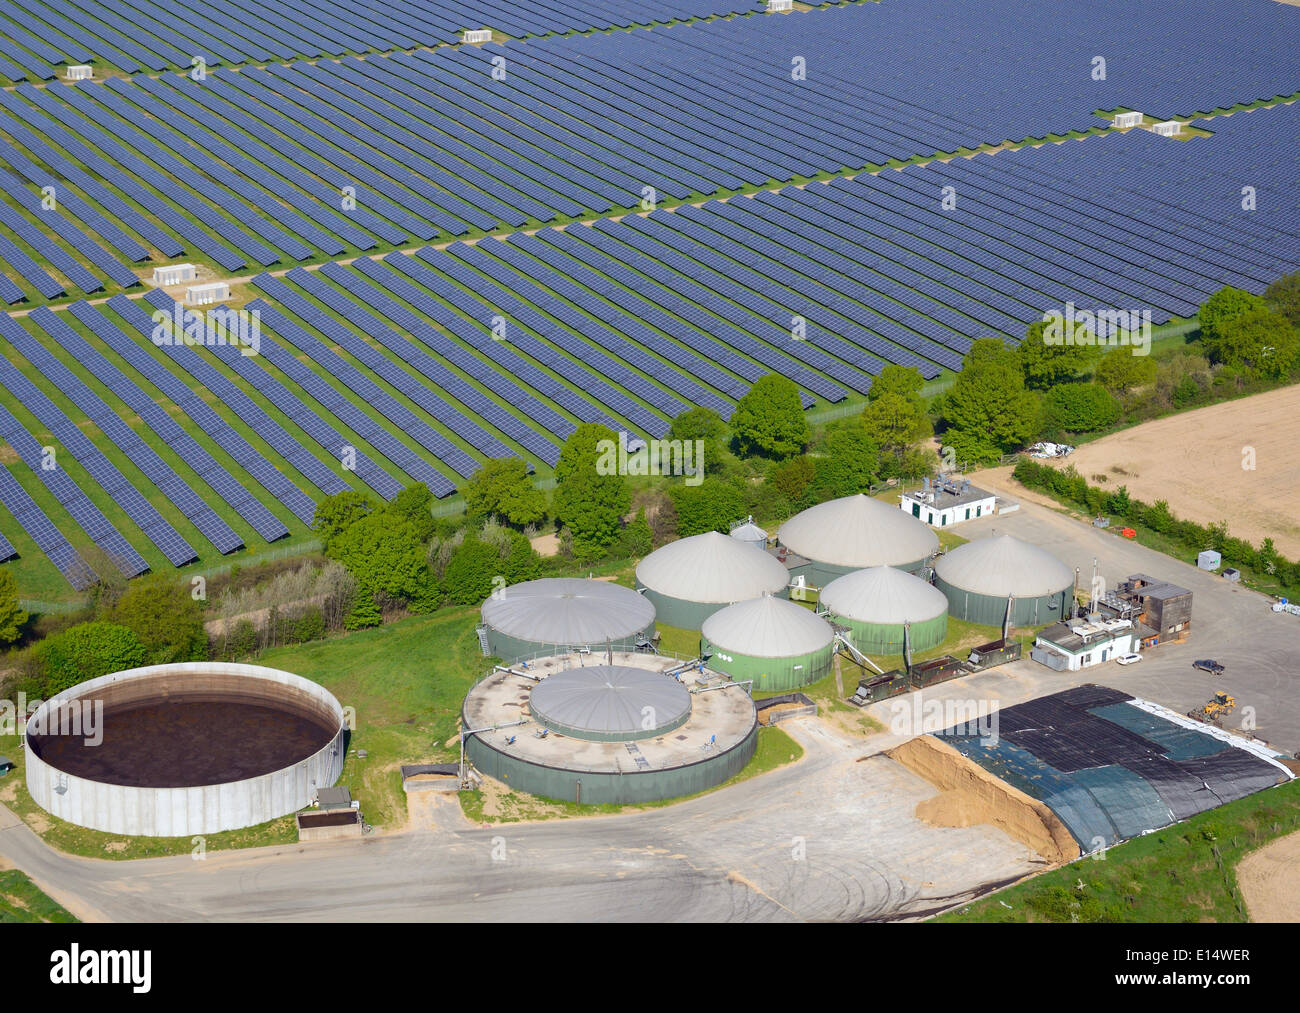 Usine de biogaz et d'un panneau solaire, deux systèmes d'énergie renouvelable, Rostock, Lauenburg, Schleswig-Holstein, Allemagne Banque D'Images